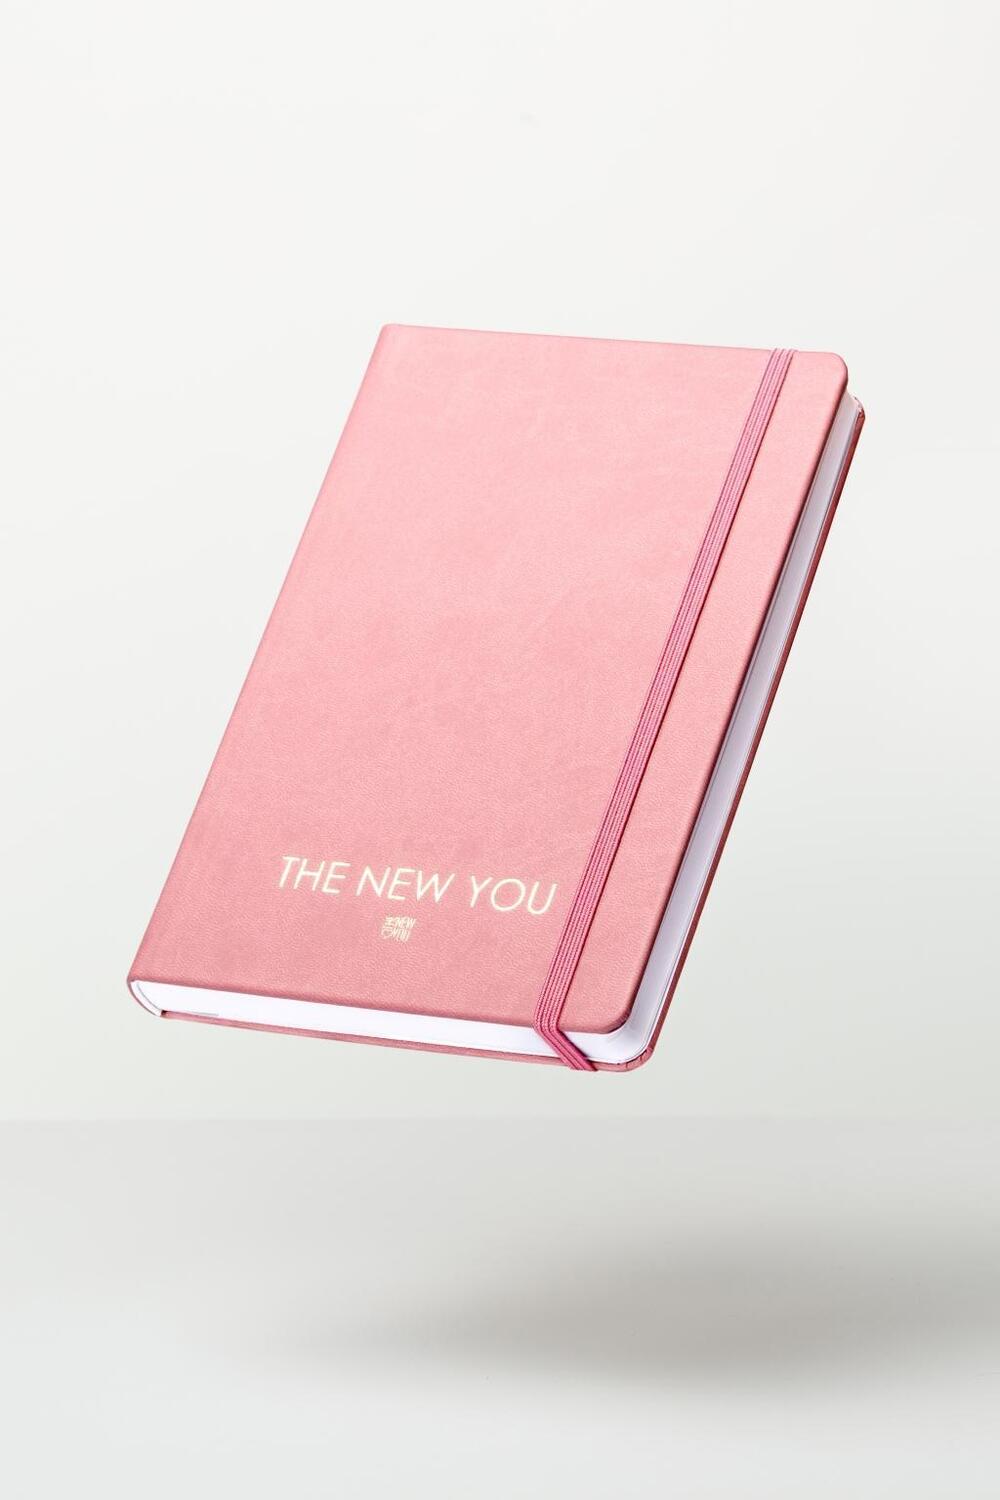 Bild: 9783981891423 | THE NEW YOU (rosa) - Das Buch, das dein Leben verändert. | Iris Reiche